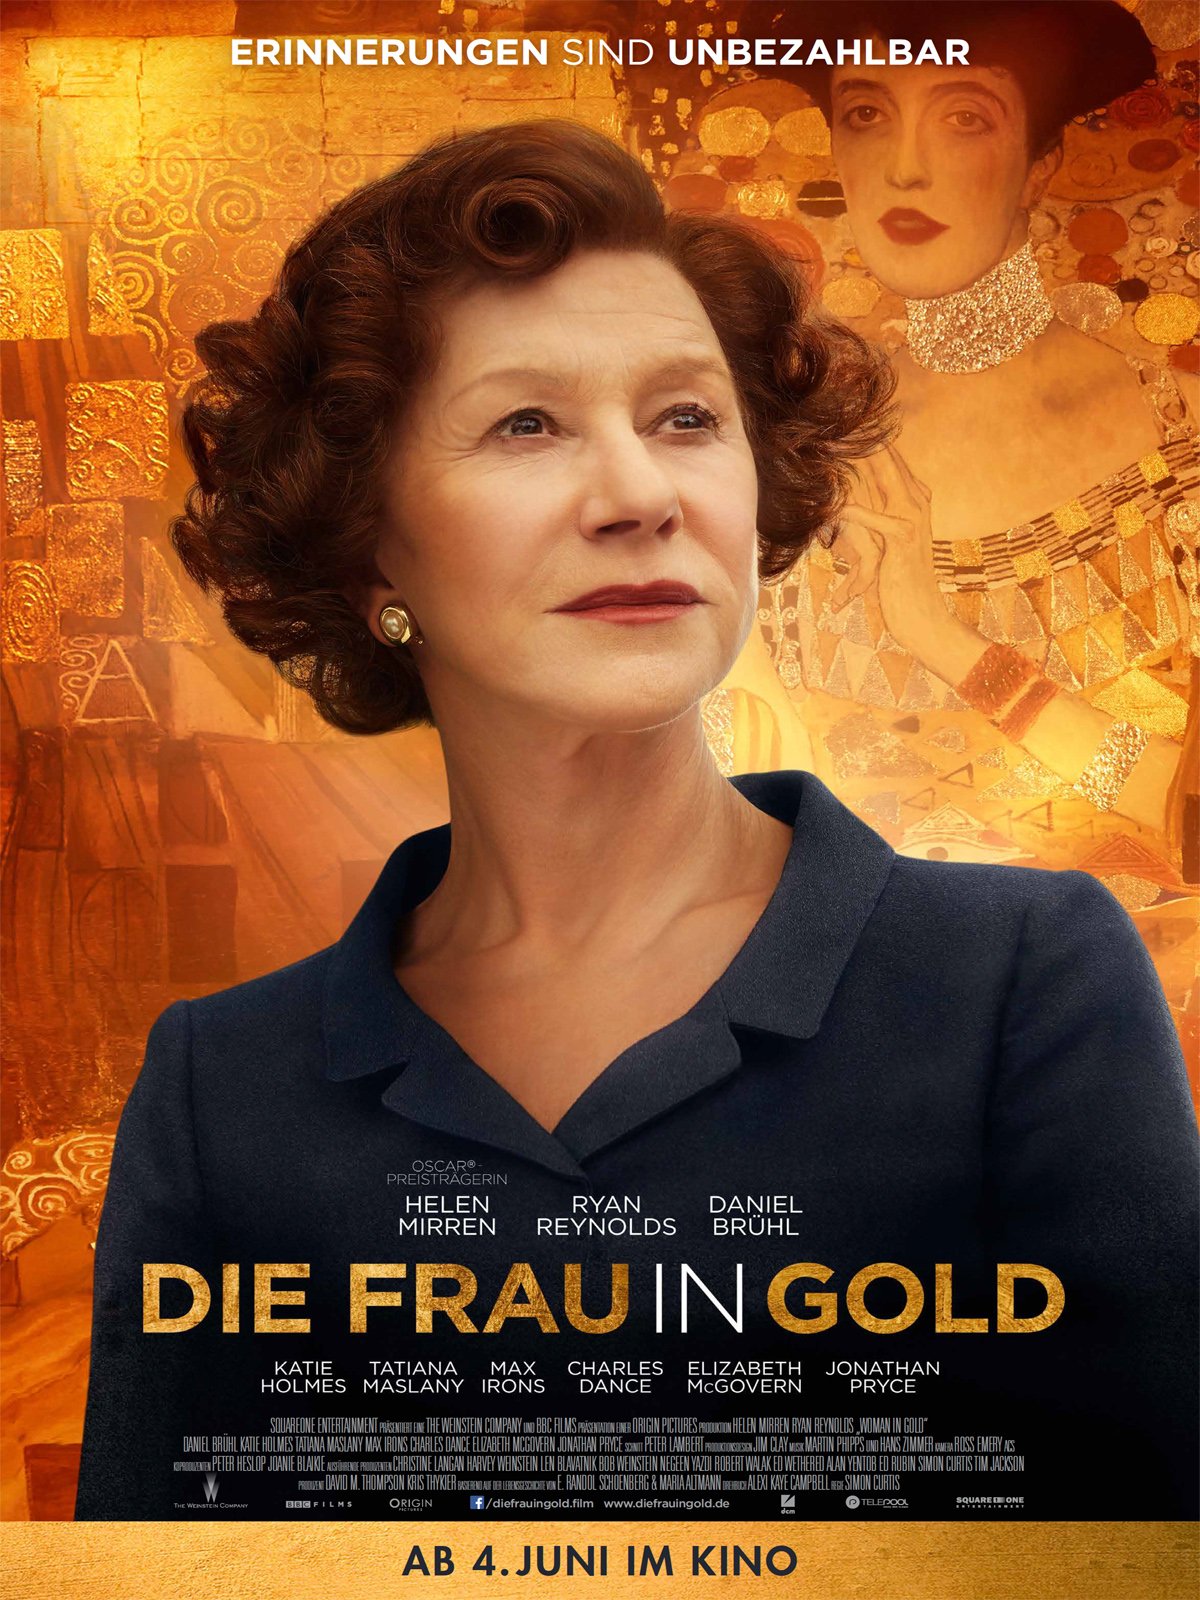 Die Frau in Gold - Film 2015 - FILMSTARTS.de